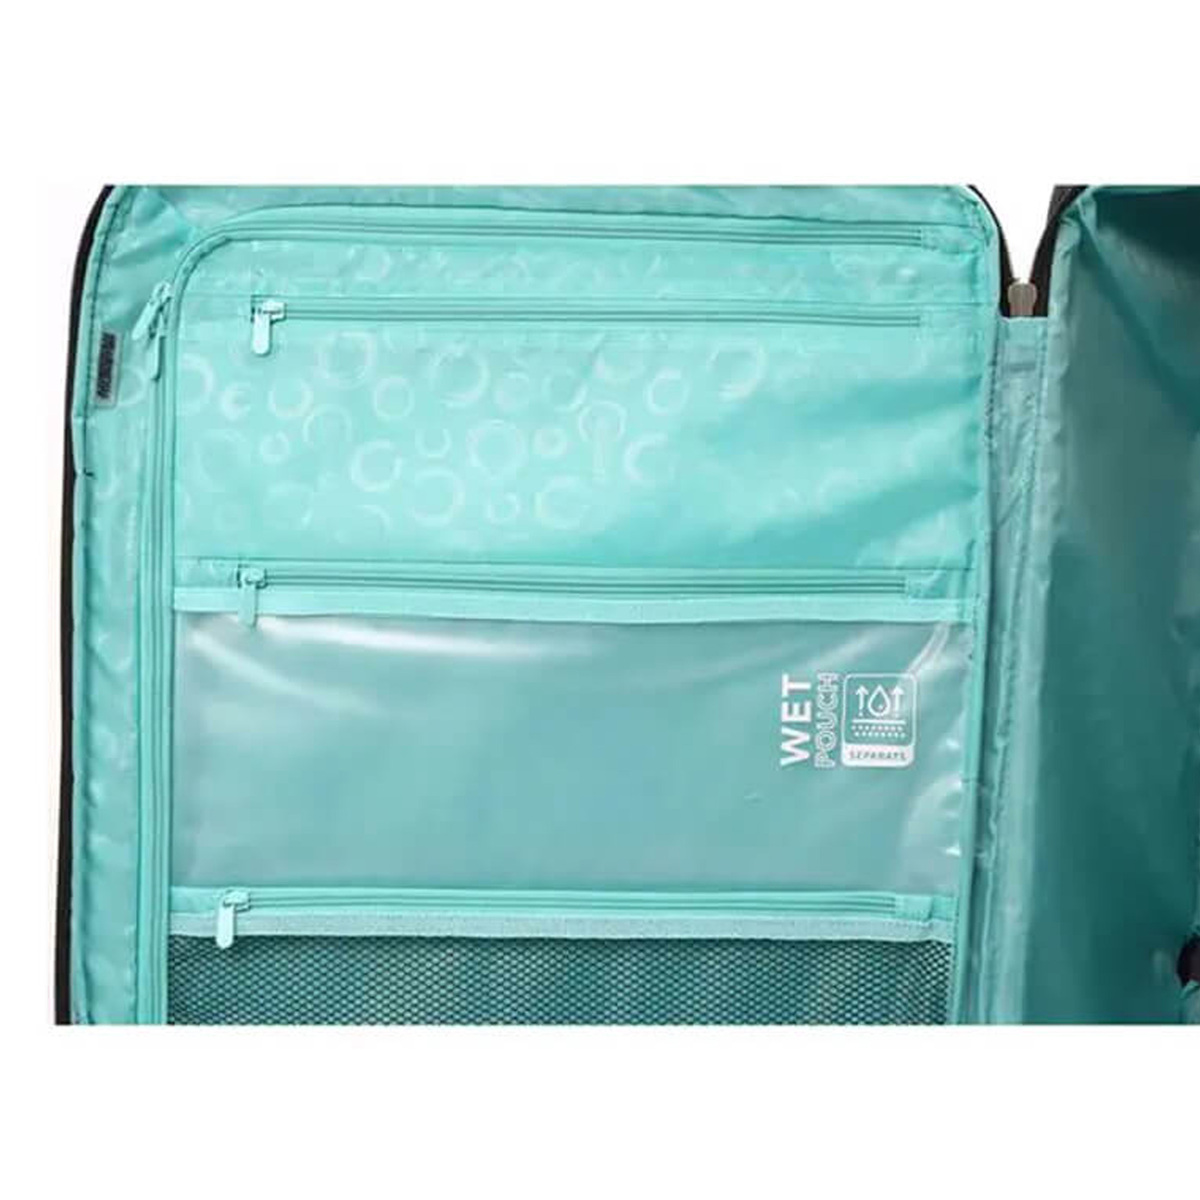 امريكان توريستر حقيبة سفر بعجلات مرنة ماجورز مع قفل TSA، 83 سم، لون عنابي